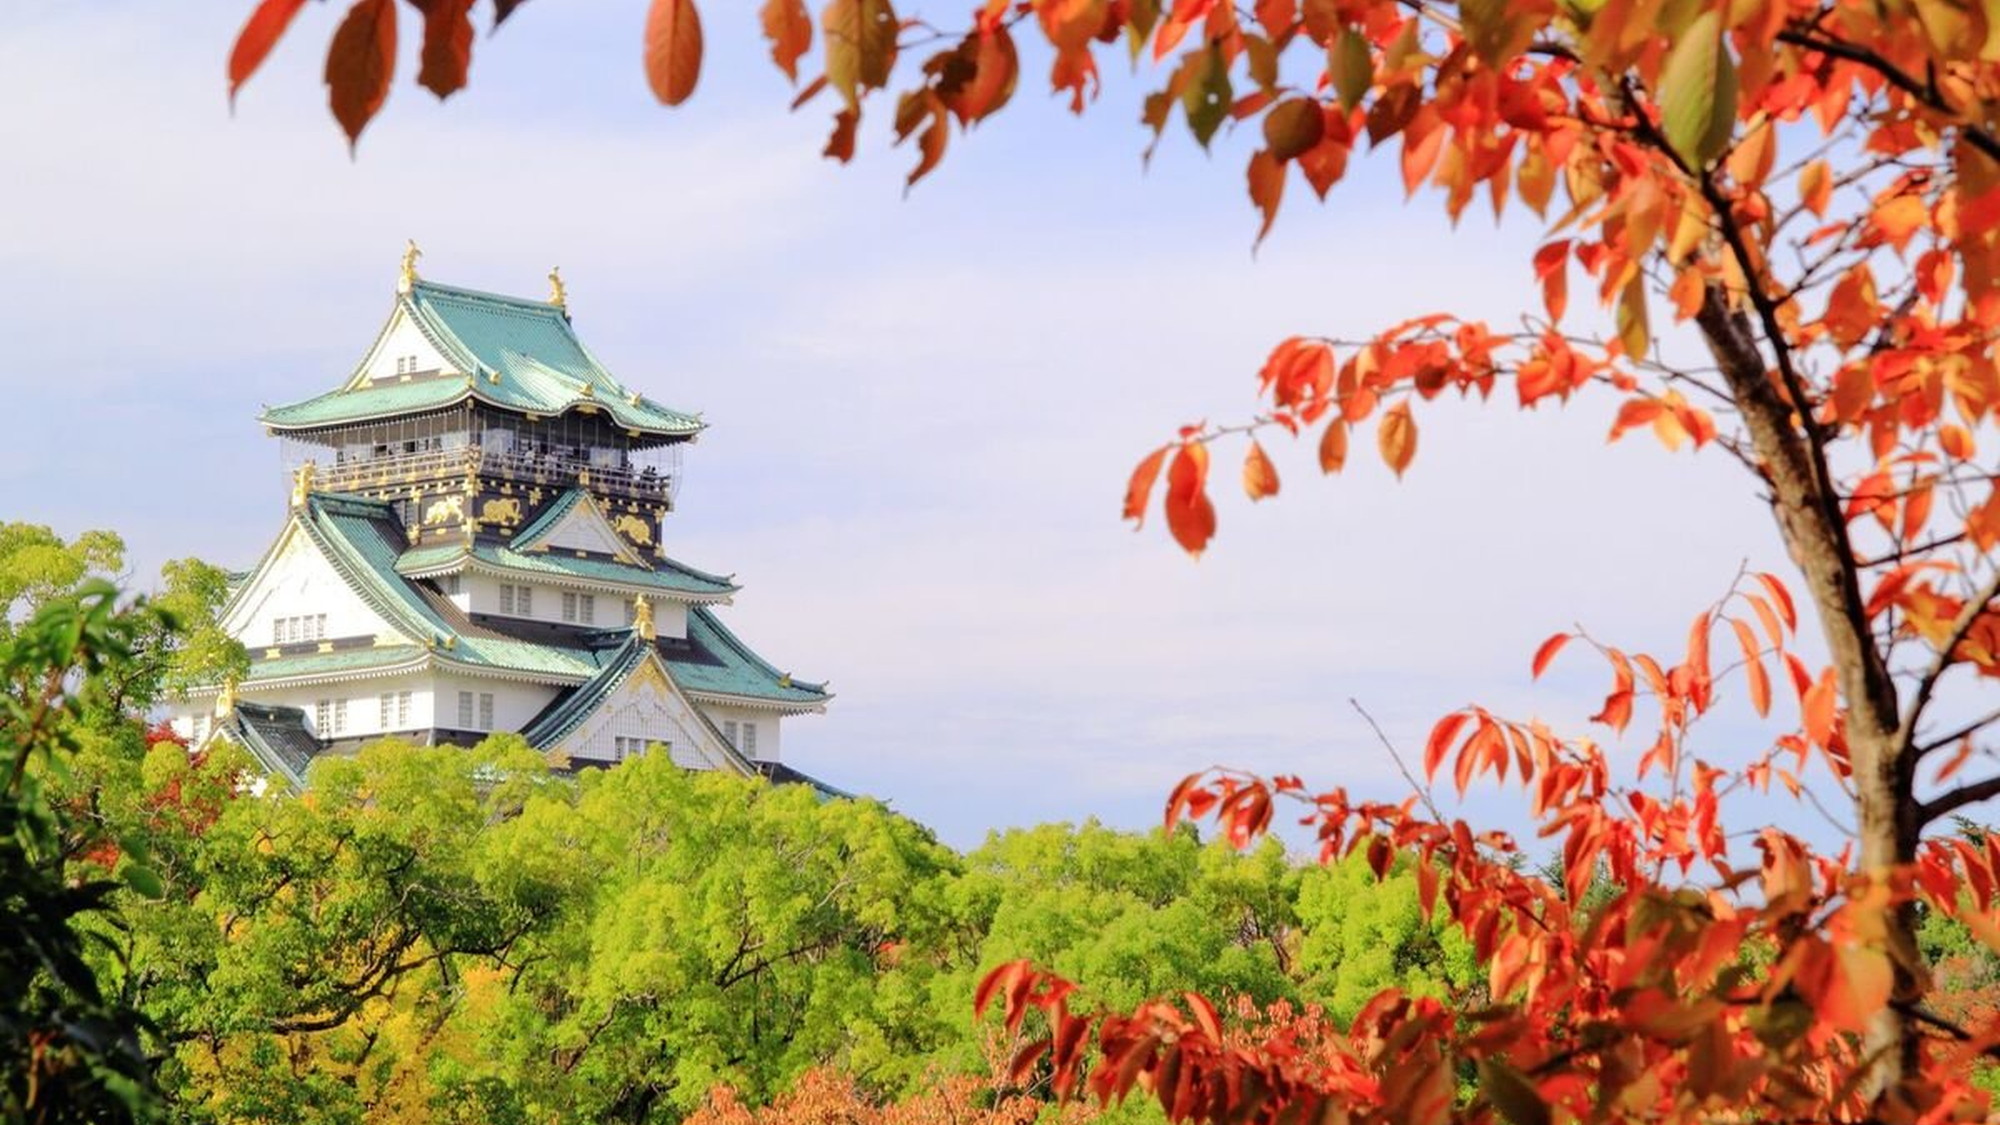 【大阪城】大阪城は大阪のシンボルで、紅葉の名所としても知られるエリアです。